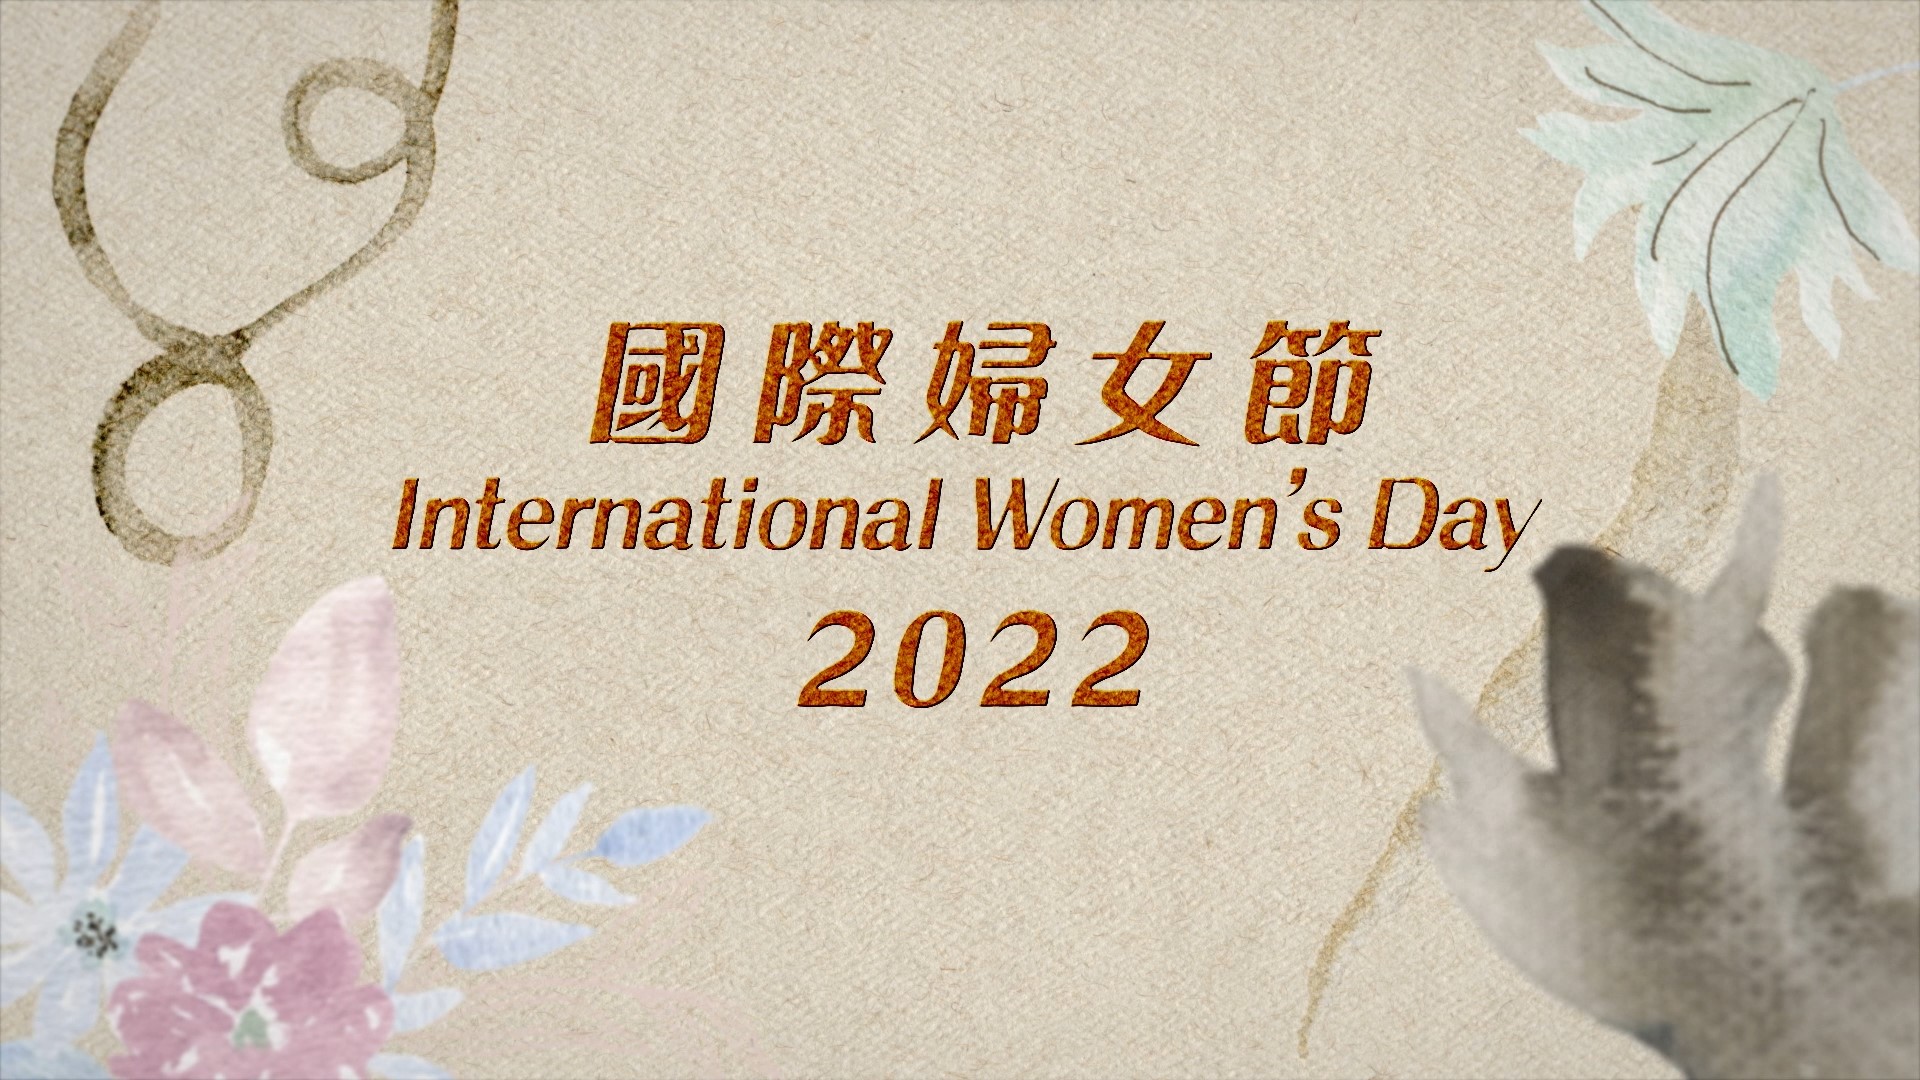 慶祝2022年國際婦女節